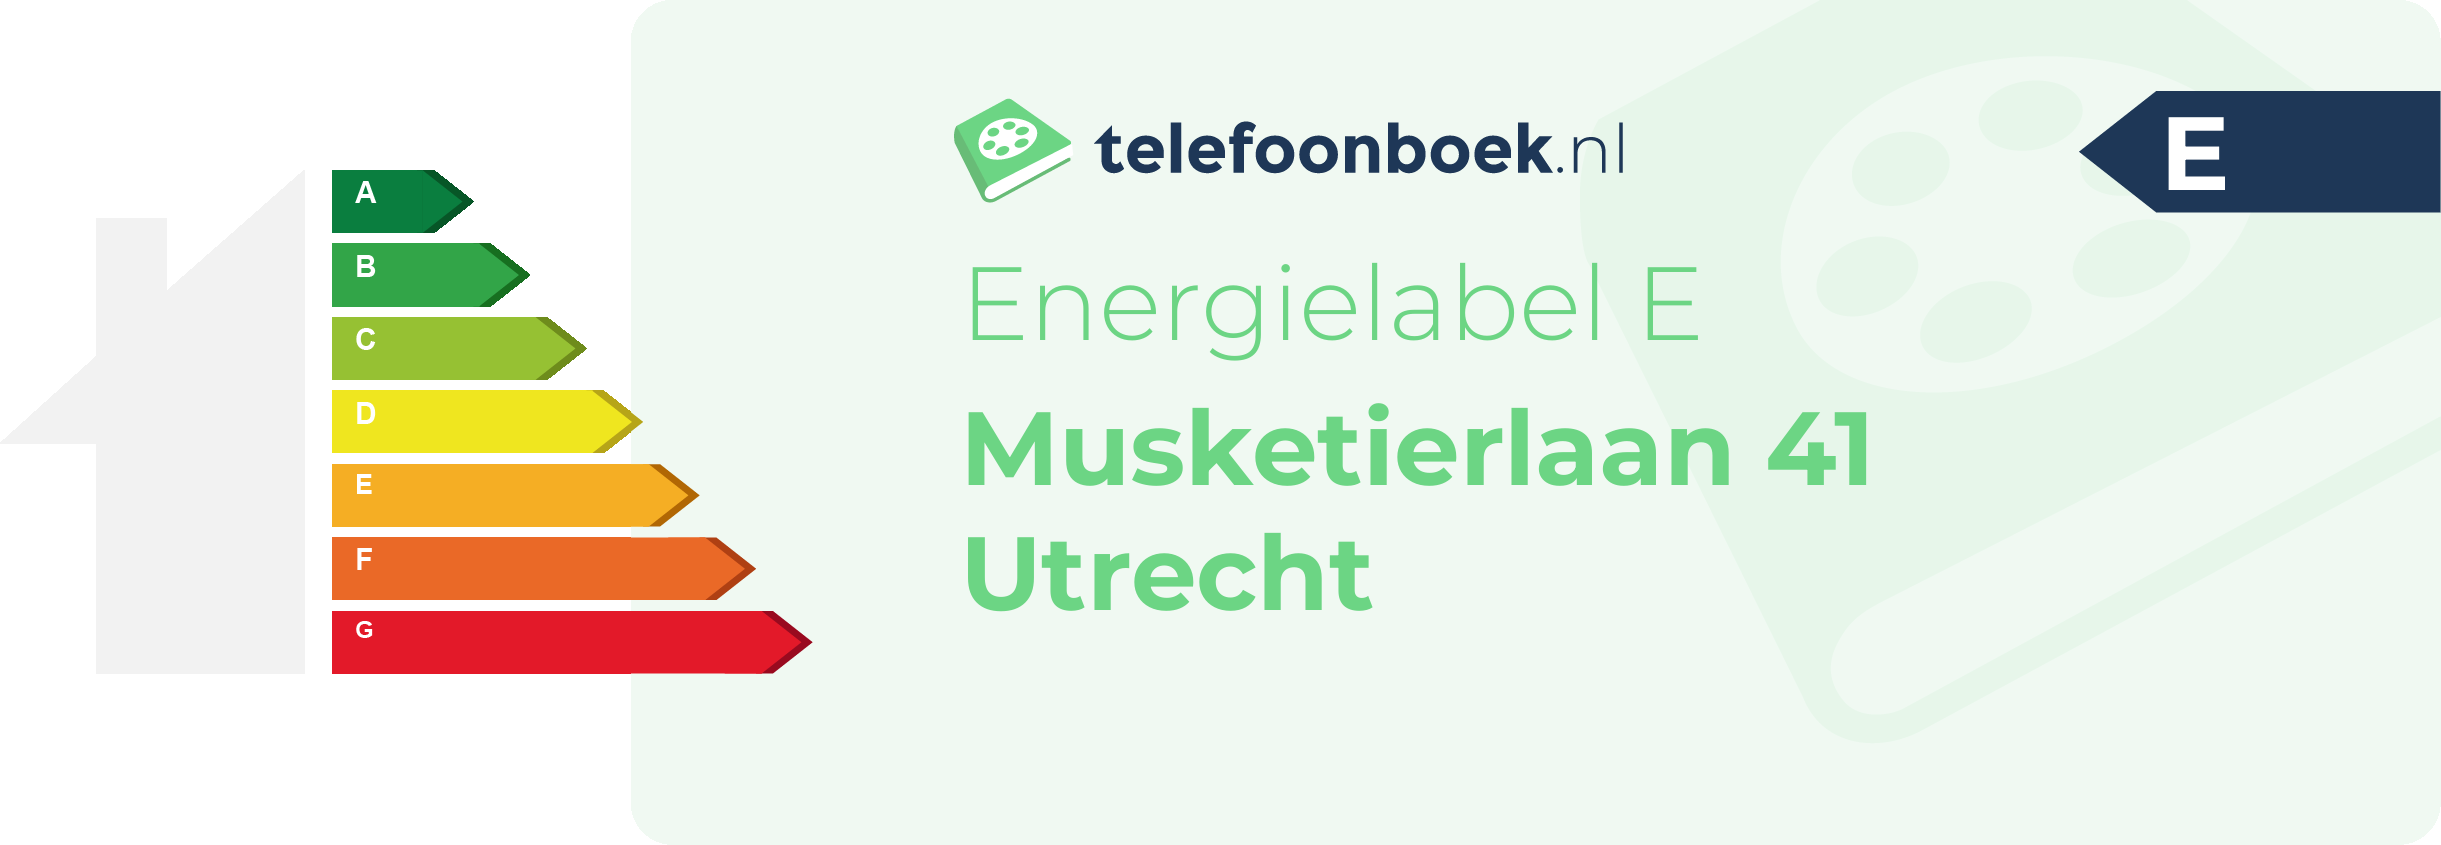 Energielabel Musketierlaan 41 Utrecht